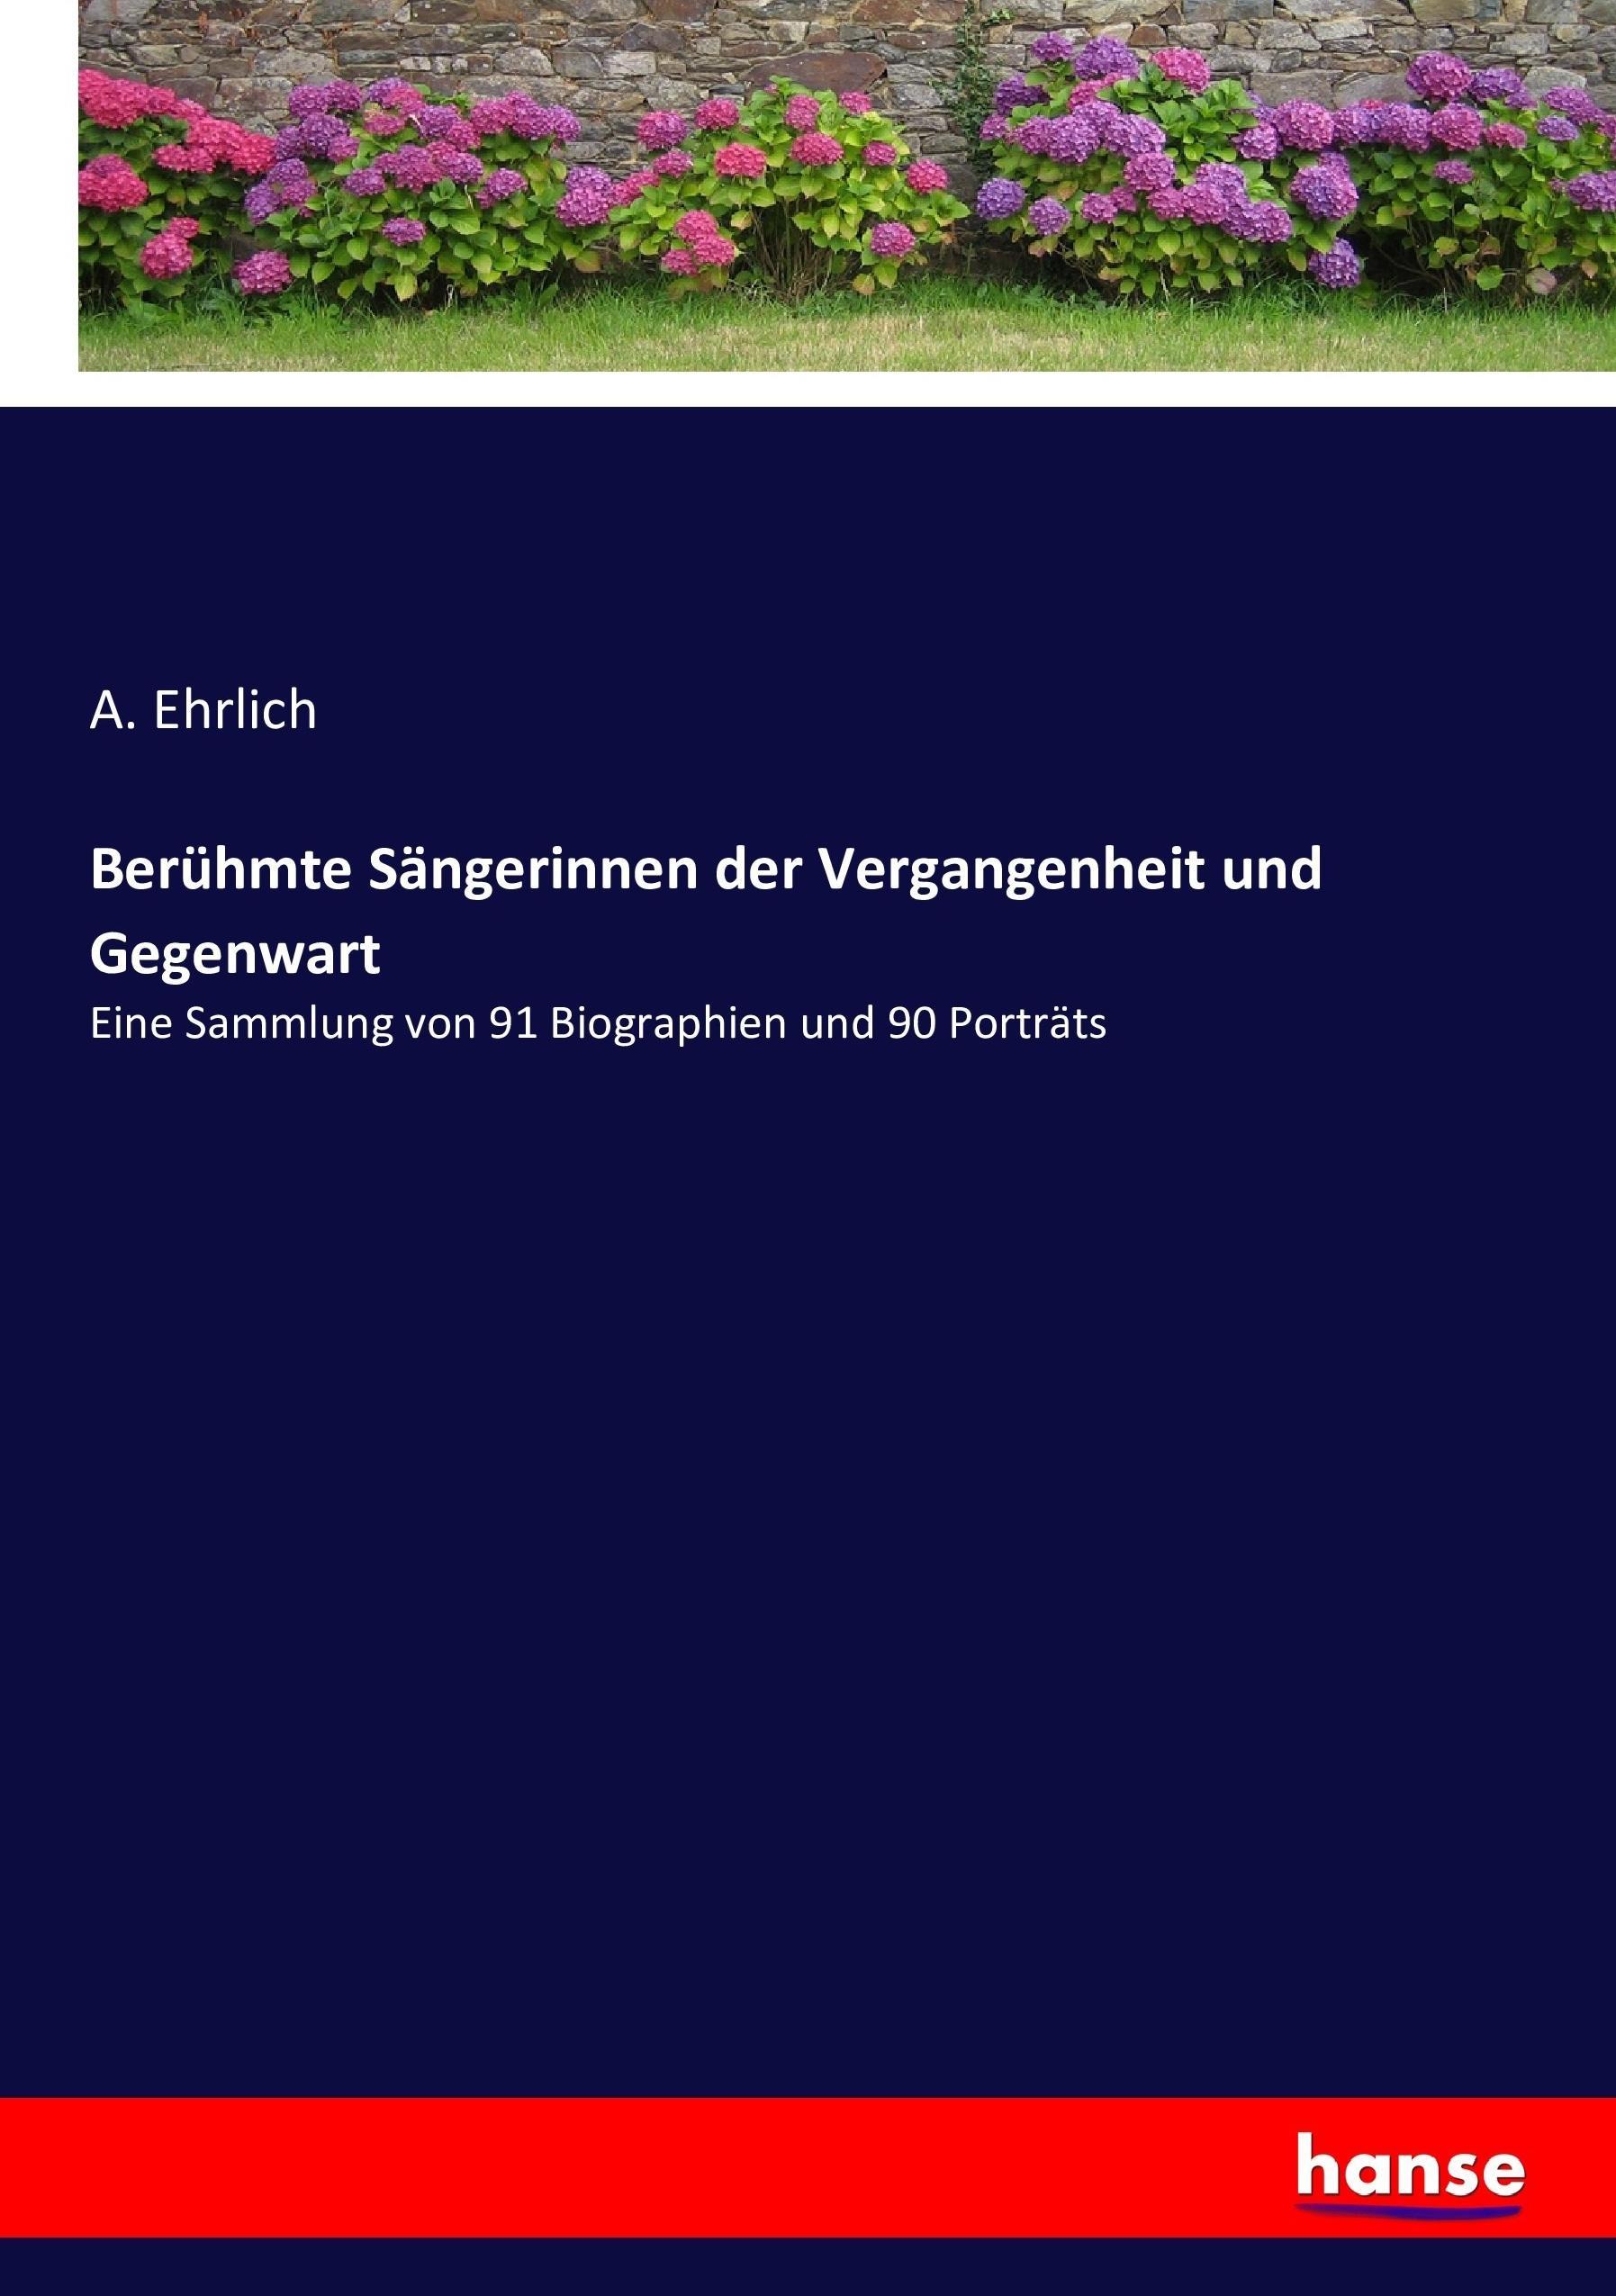 Beruehmte Saengerinnen der Vergangenheit und Gegenwart - Ehrlich, A.